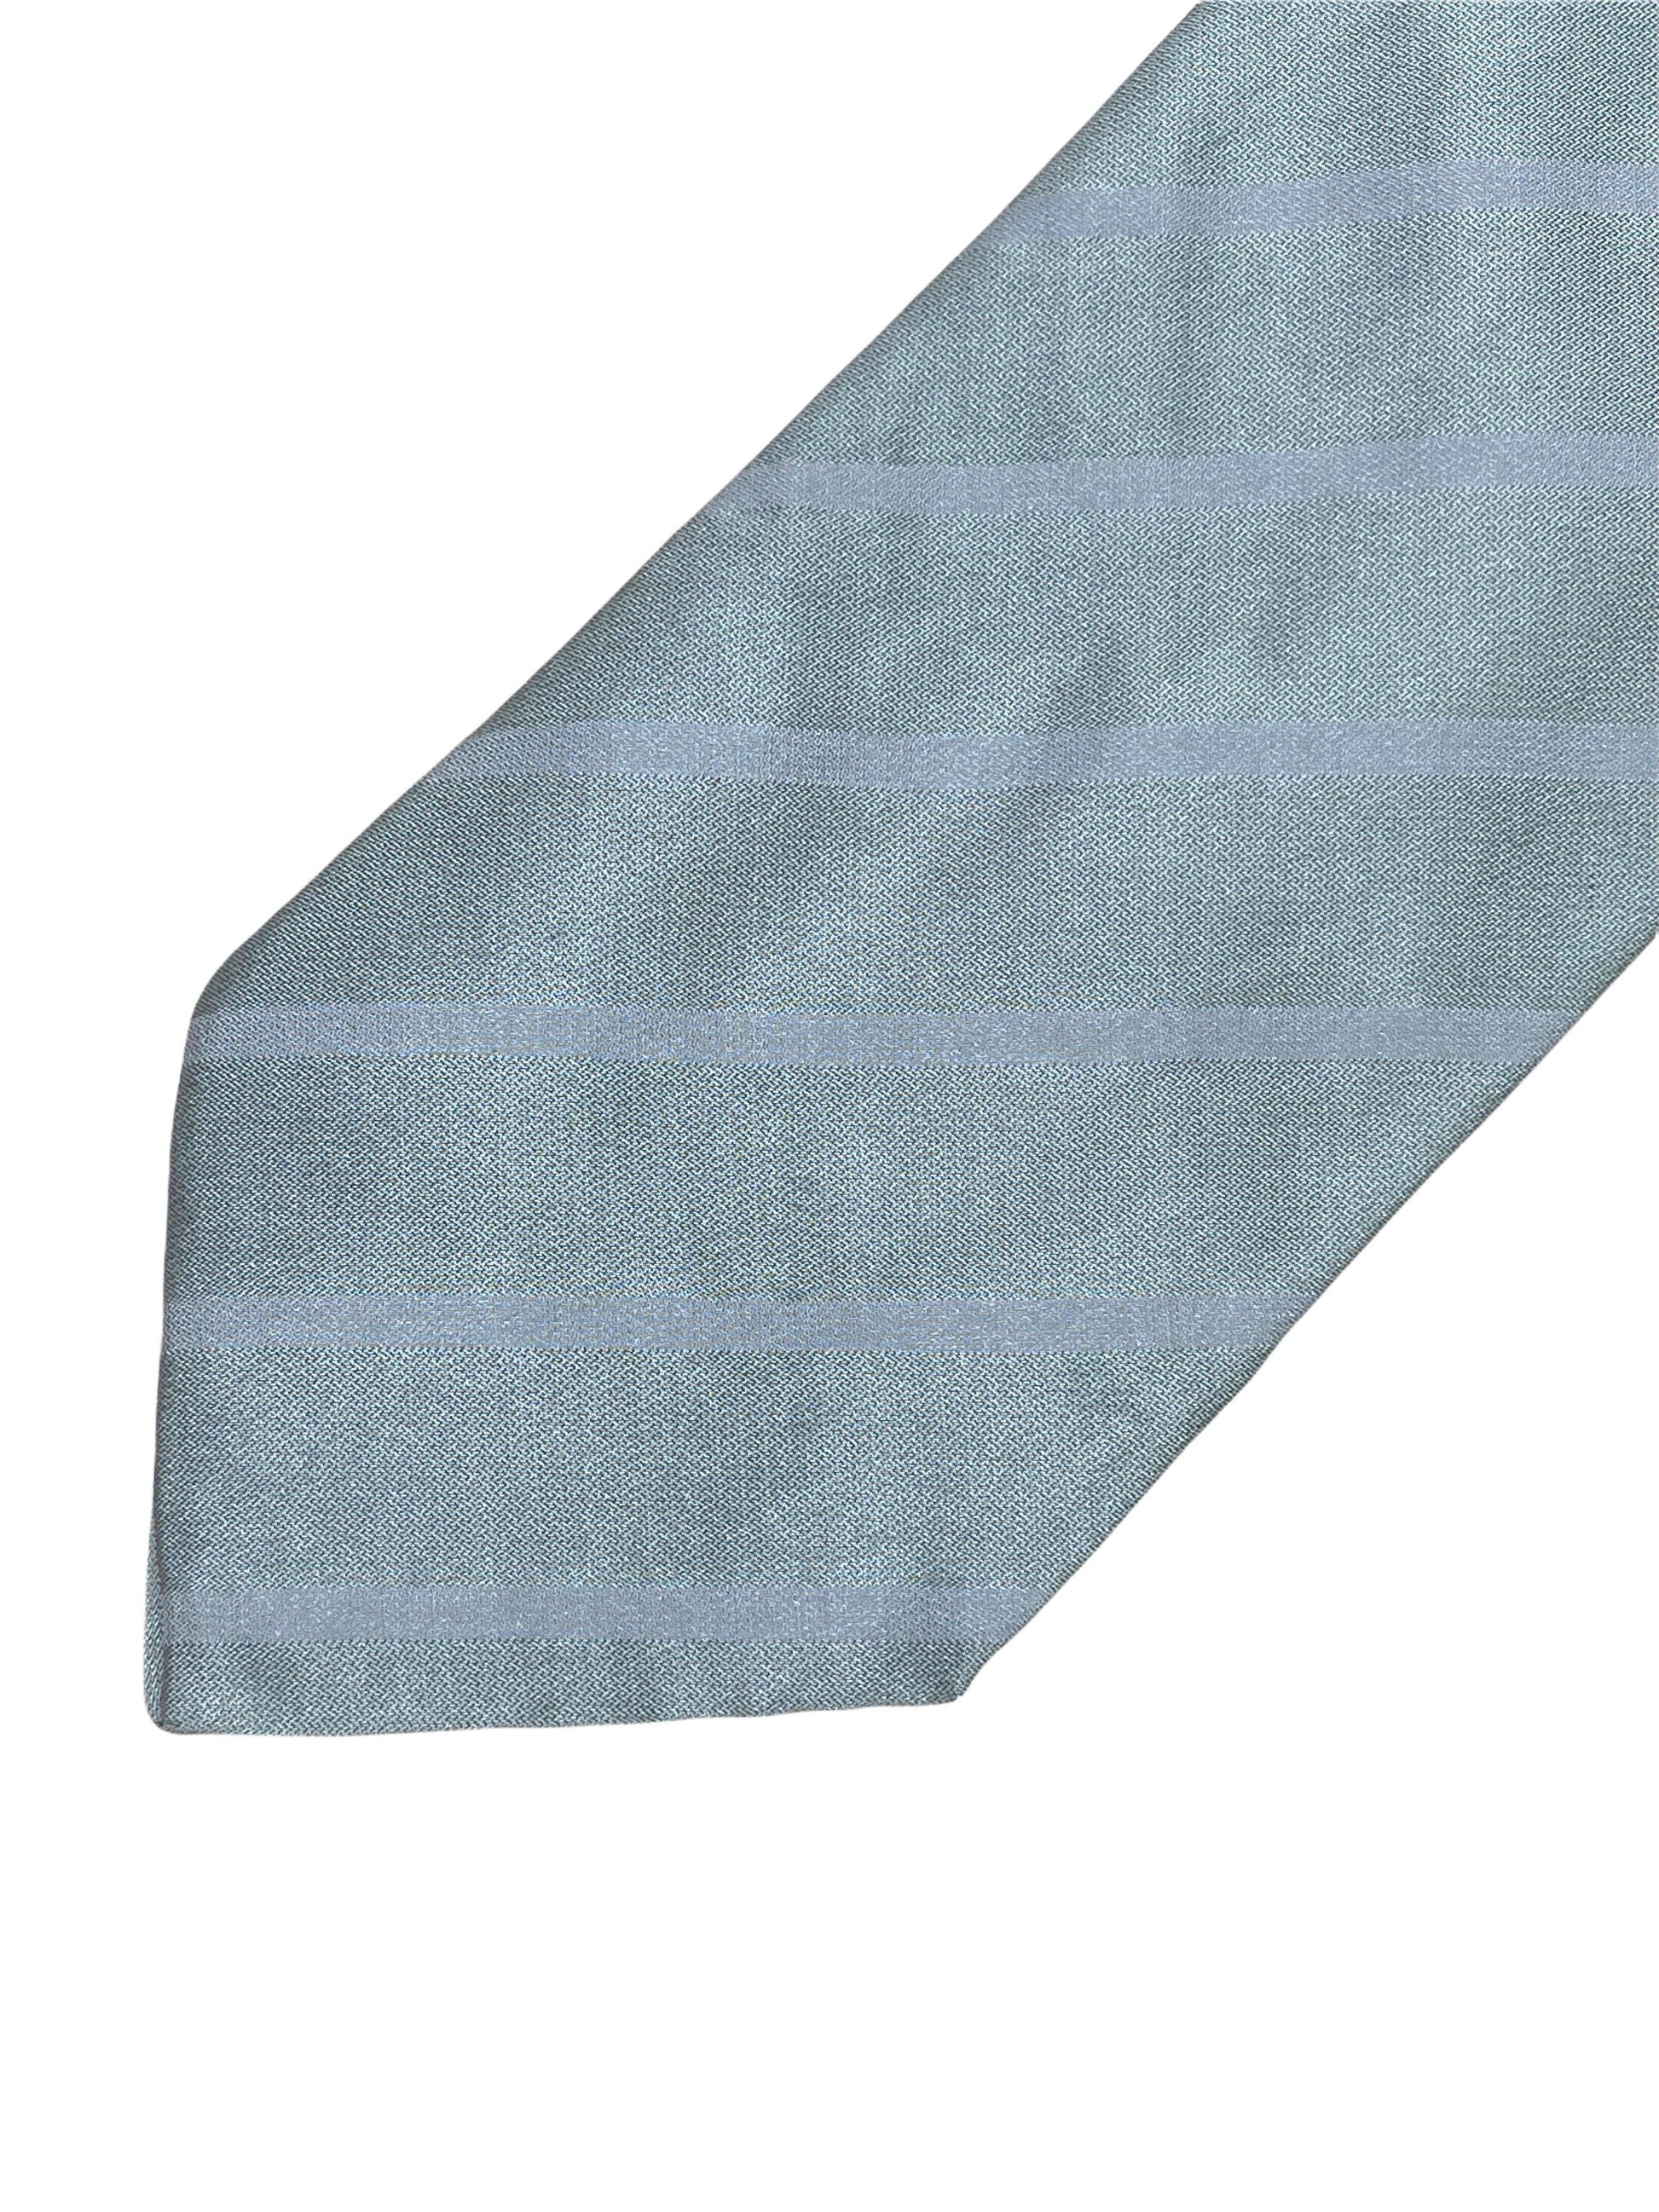 Giorgio Armani silver striped silk tie 